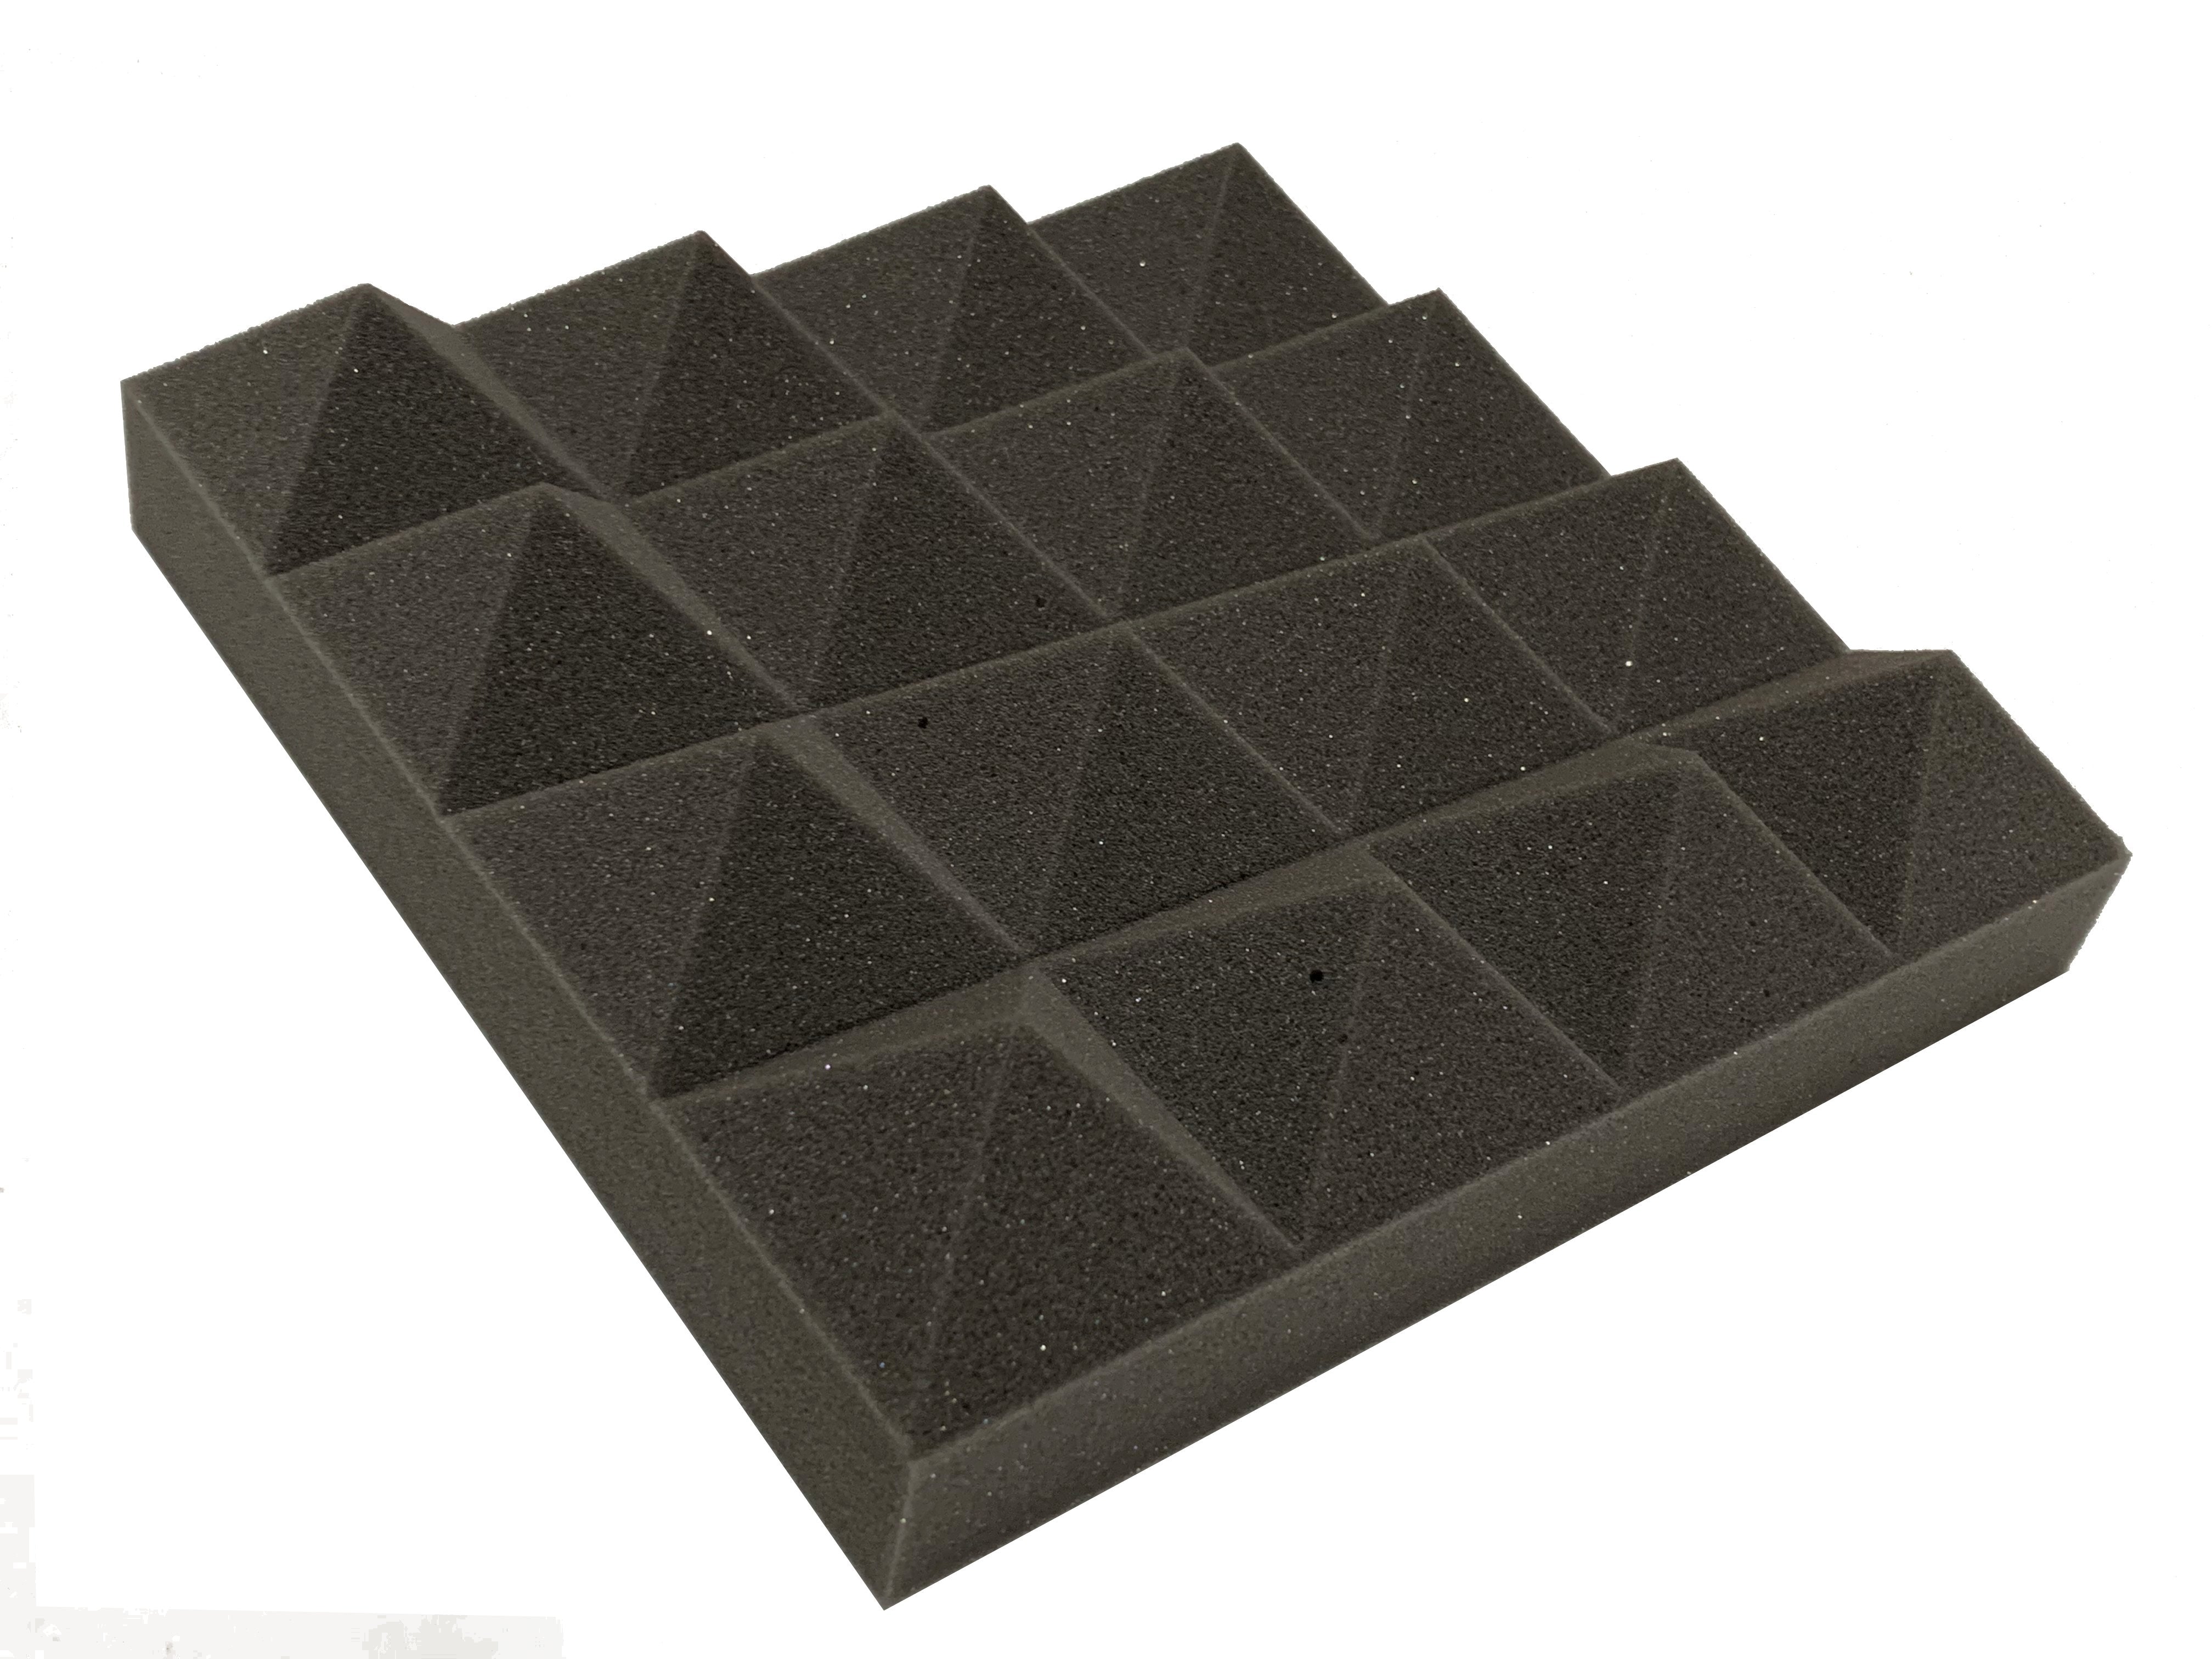 Pyramid PRO 12" Acoustic Studio Foam Tile Pack - Advanced Acoustics